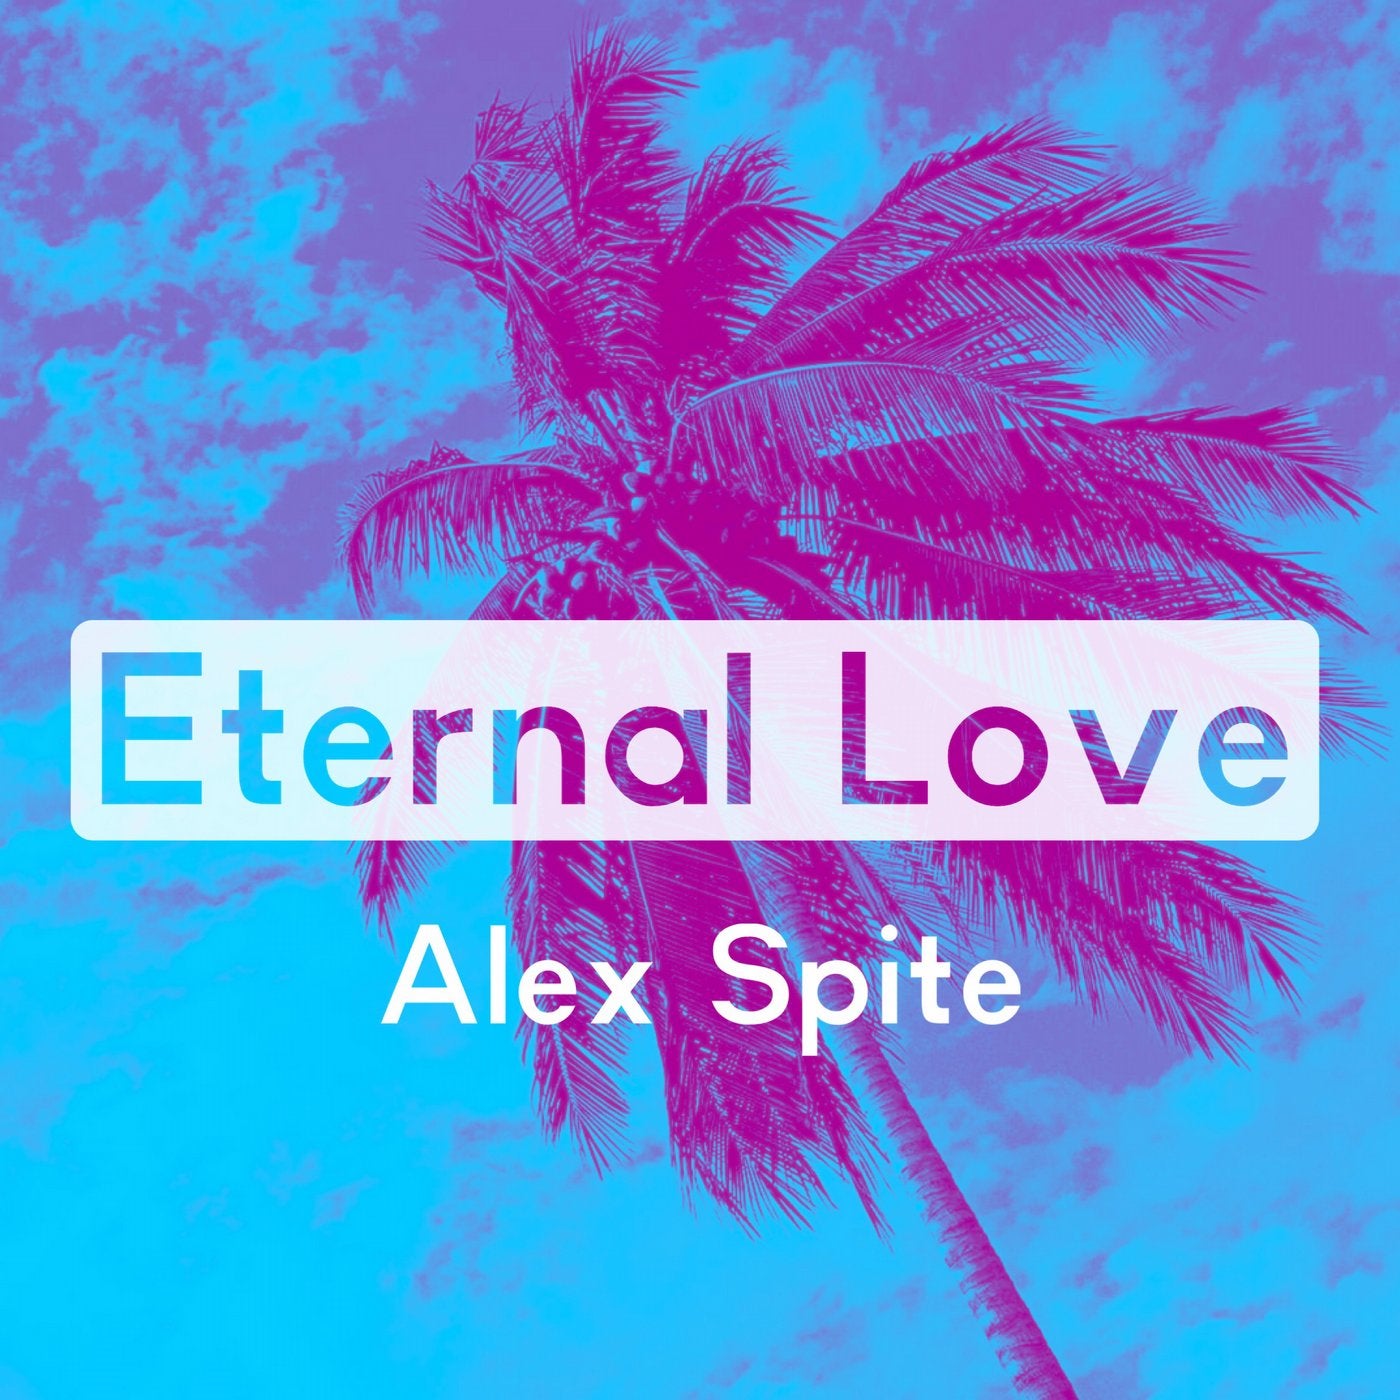 Алекс лове. Alex Eternal. Alex spite | Алекс спайт. Alex-spite-Eternal-Love. Alex_spite_-_forgive_Original_Mix.